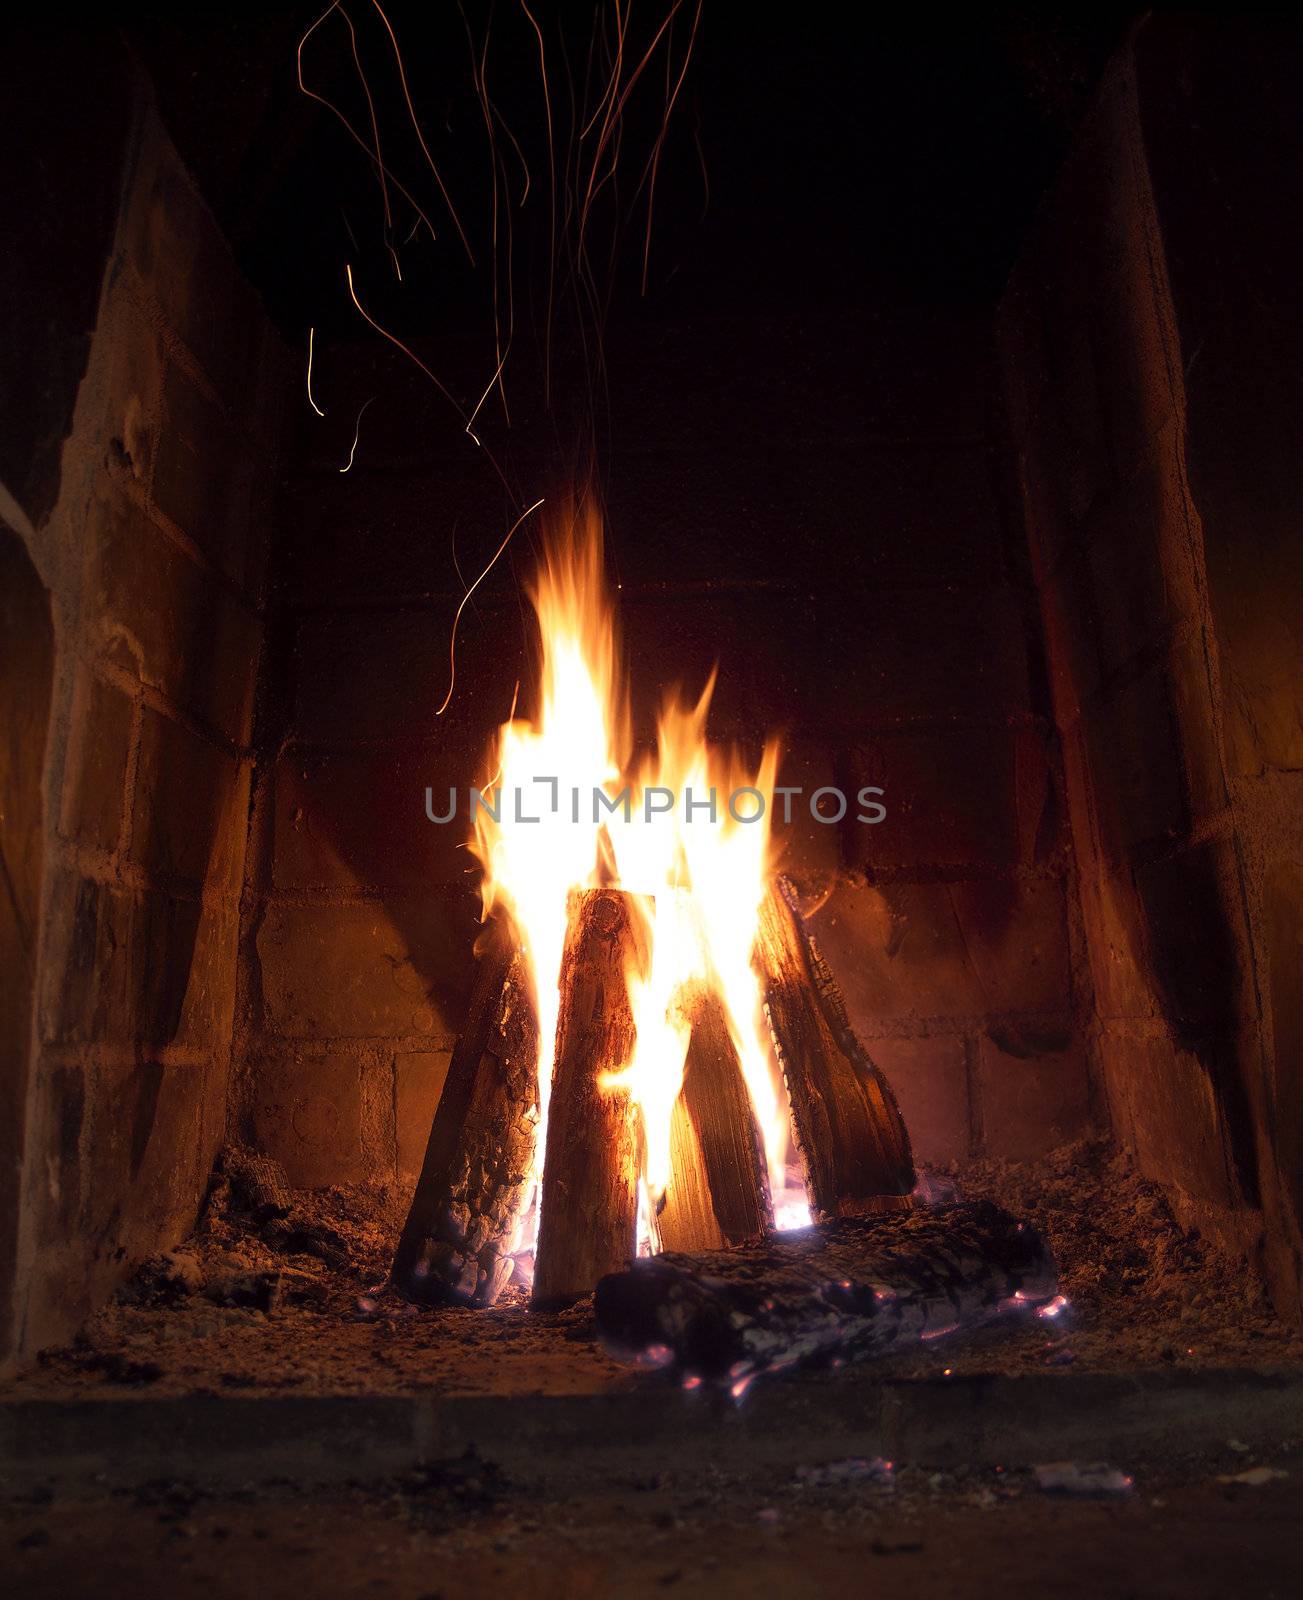 Fireplace by gemenacom